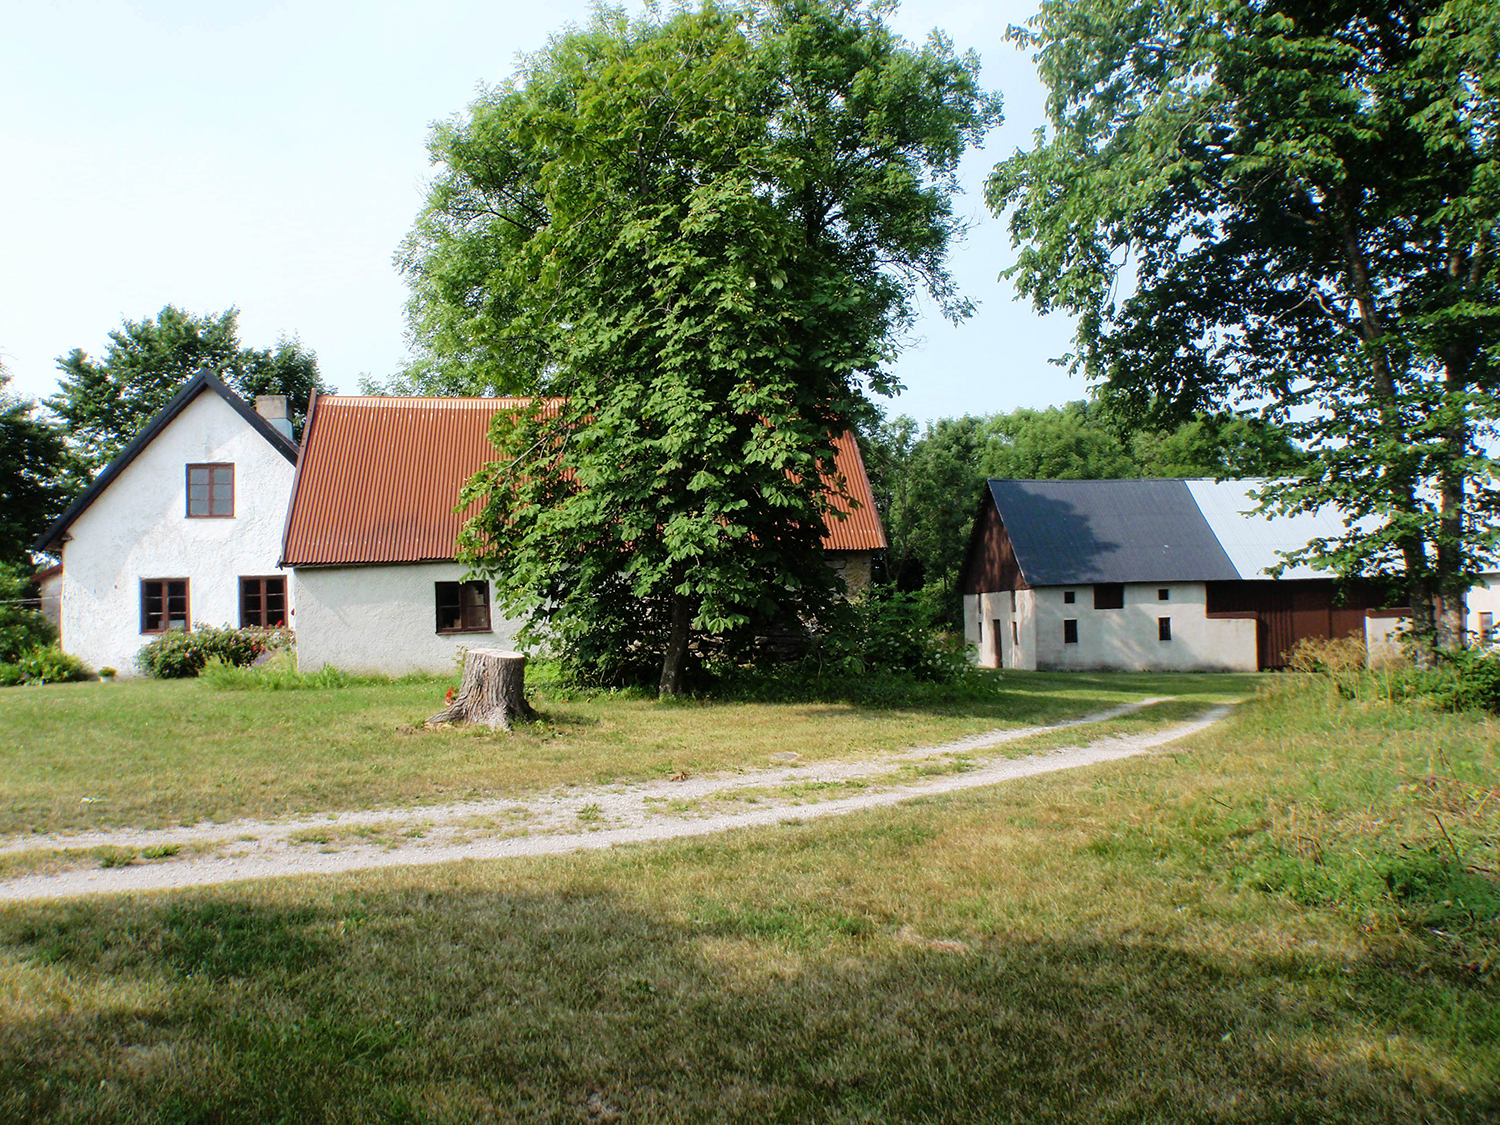 Två vita hus med bruna fönster och bruna plåttak. På gården finns även en vit lada.